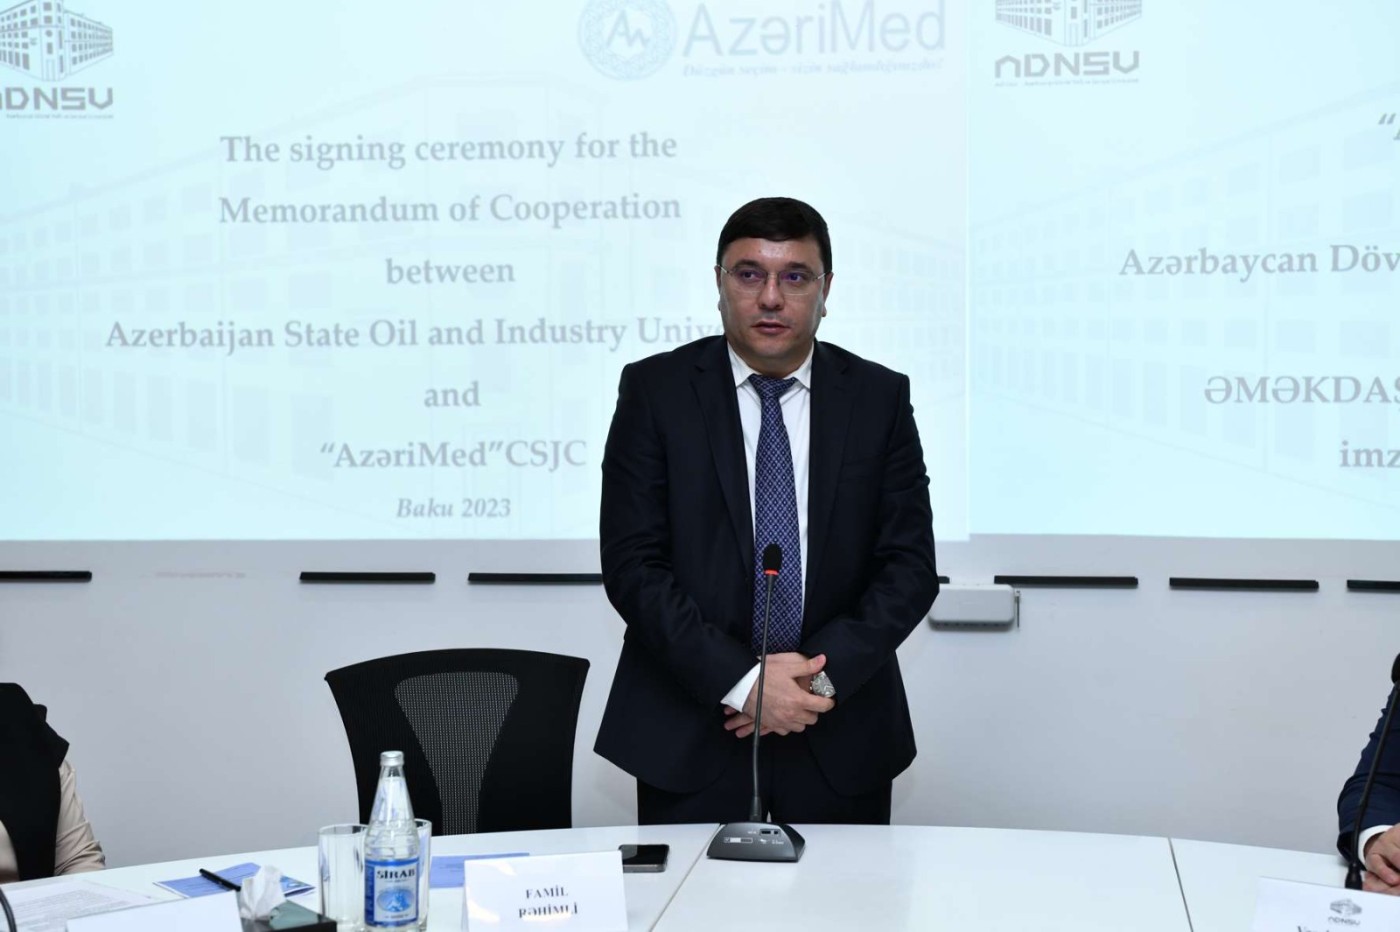 ADNSU ilə “AzeriMed” QSC arasında memorandum imzalandı - FOTOLAR